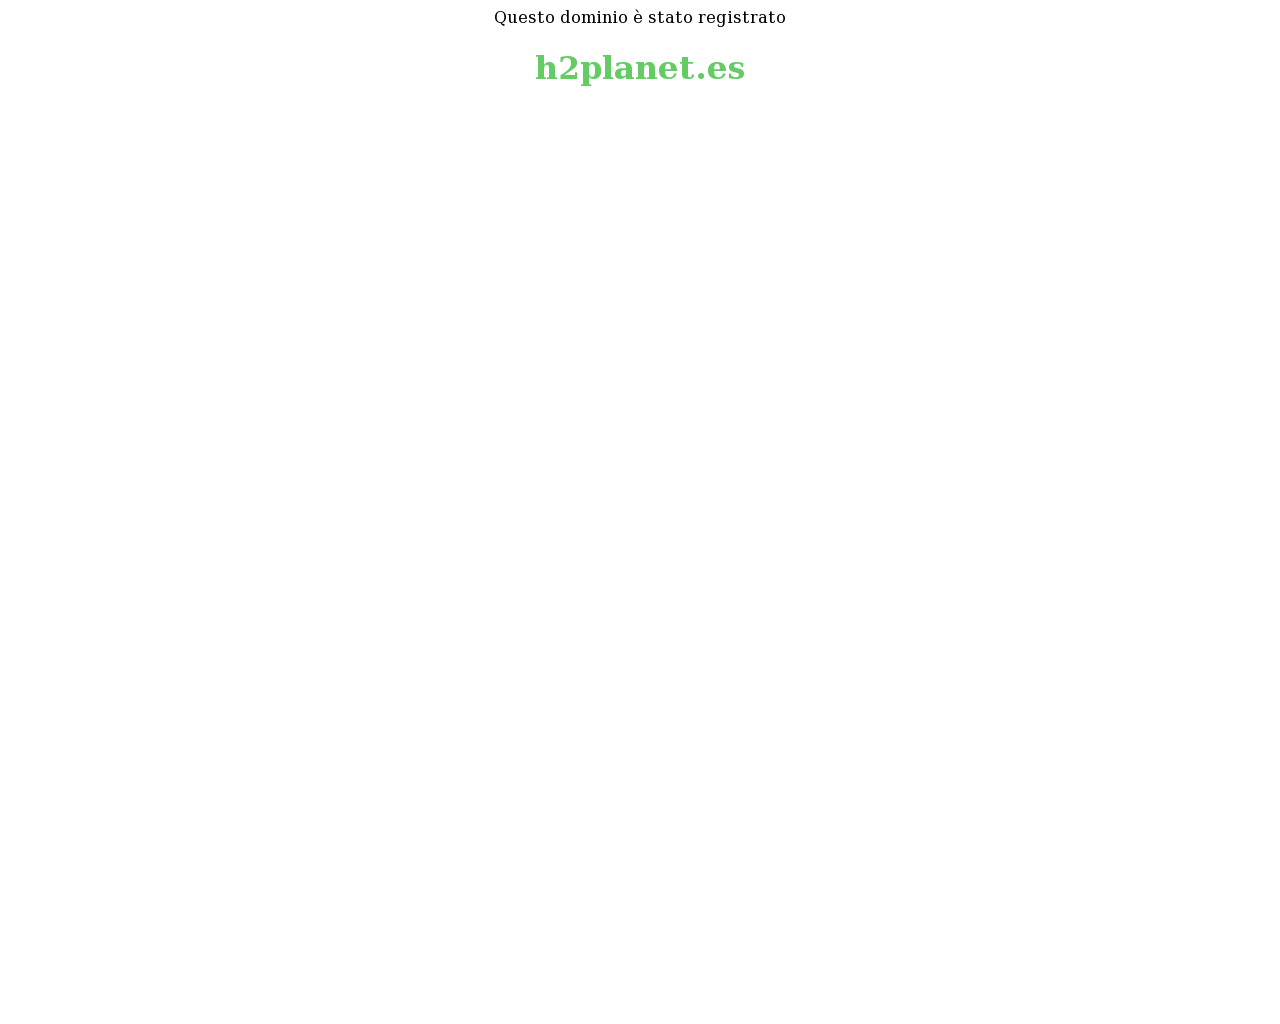 El sitio de la imagen h2planet.es en 1280x1024